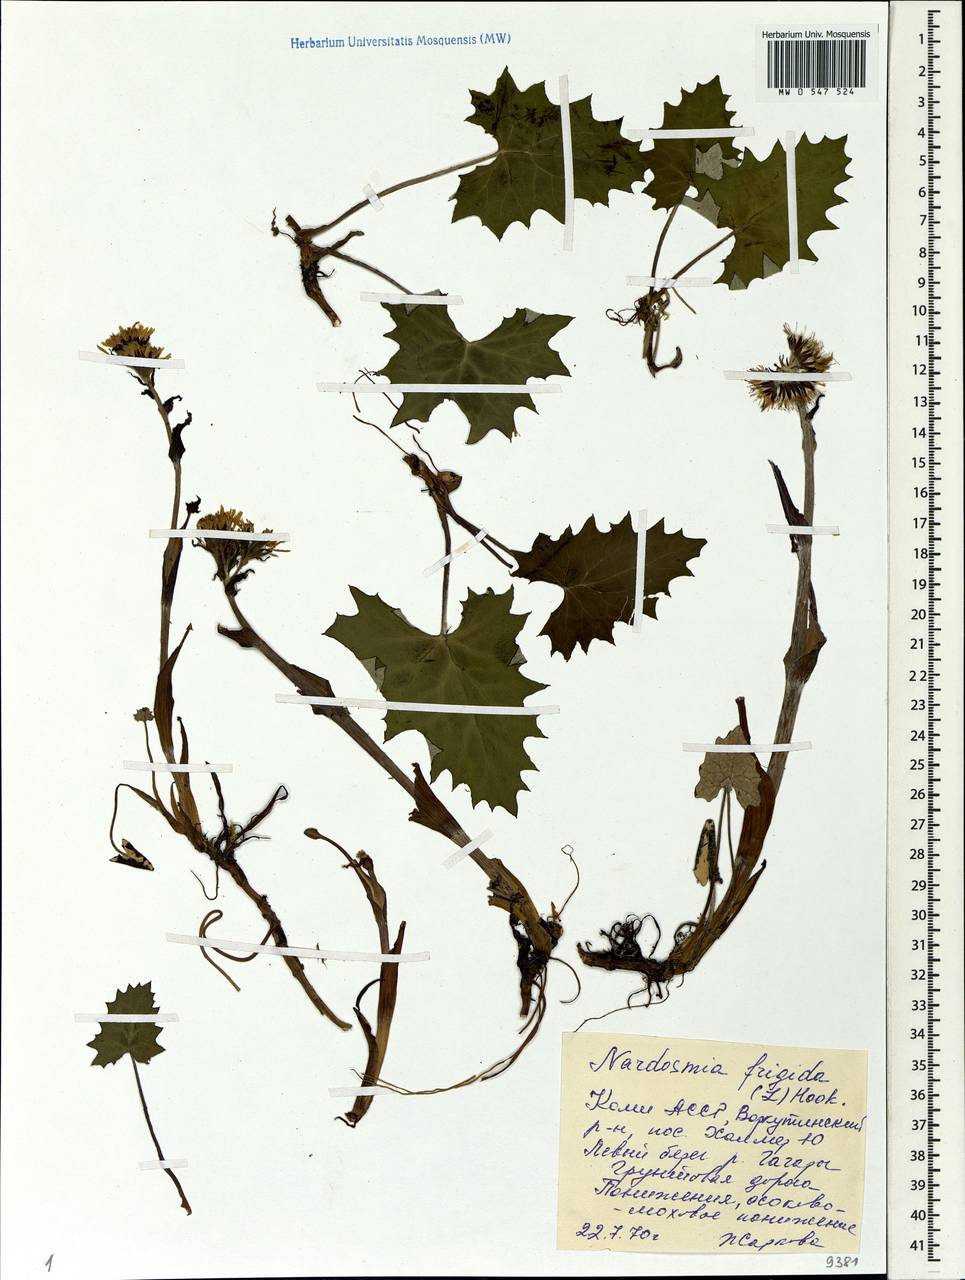 Petasites frigidus (L.) Fr., Eastern Europe, Northern region (E1) (Russia)